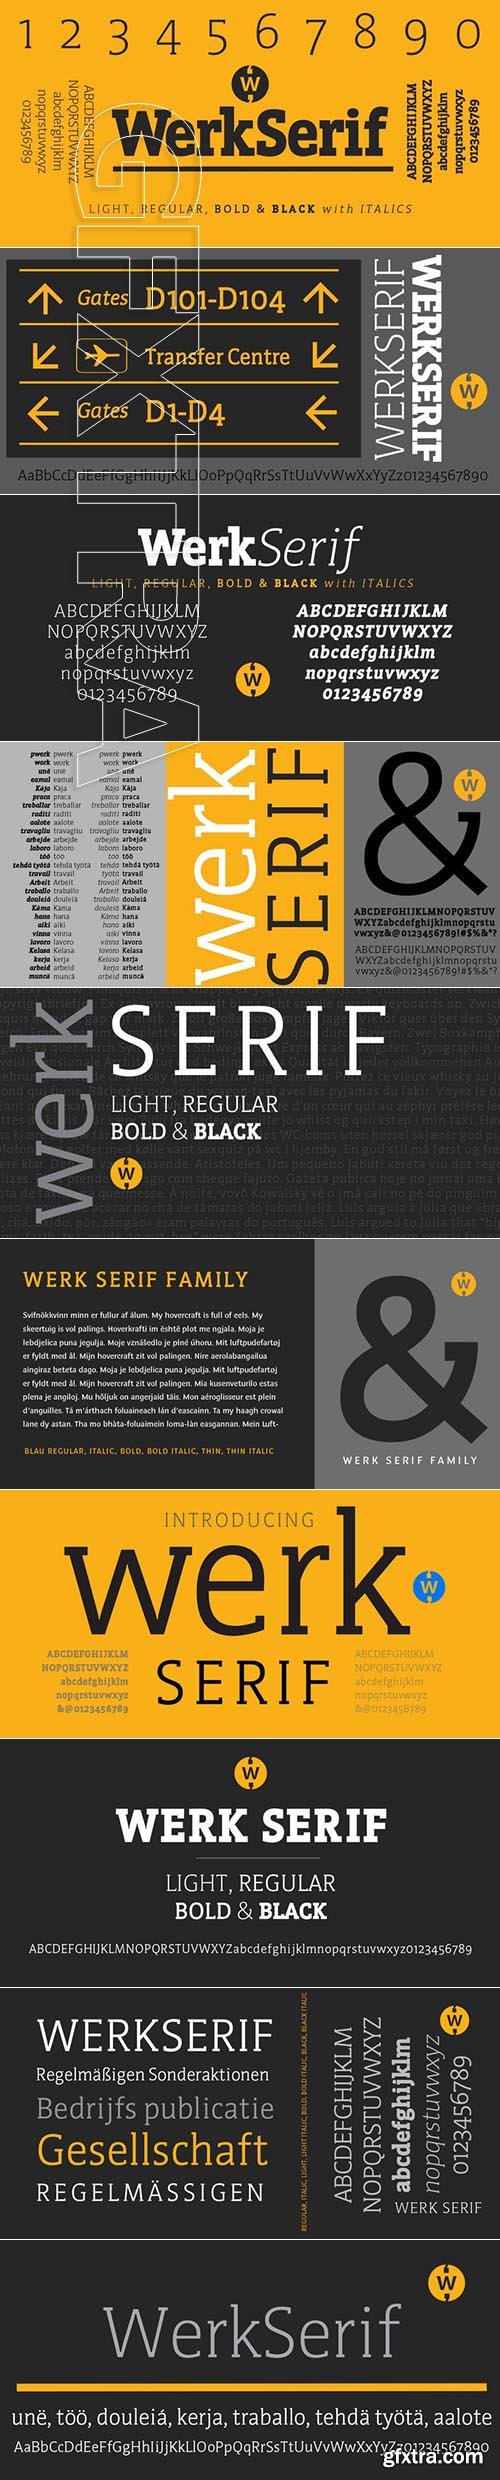 WerkSerif font family